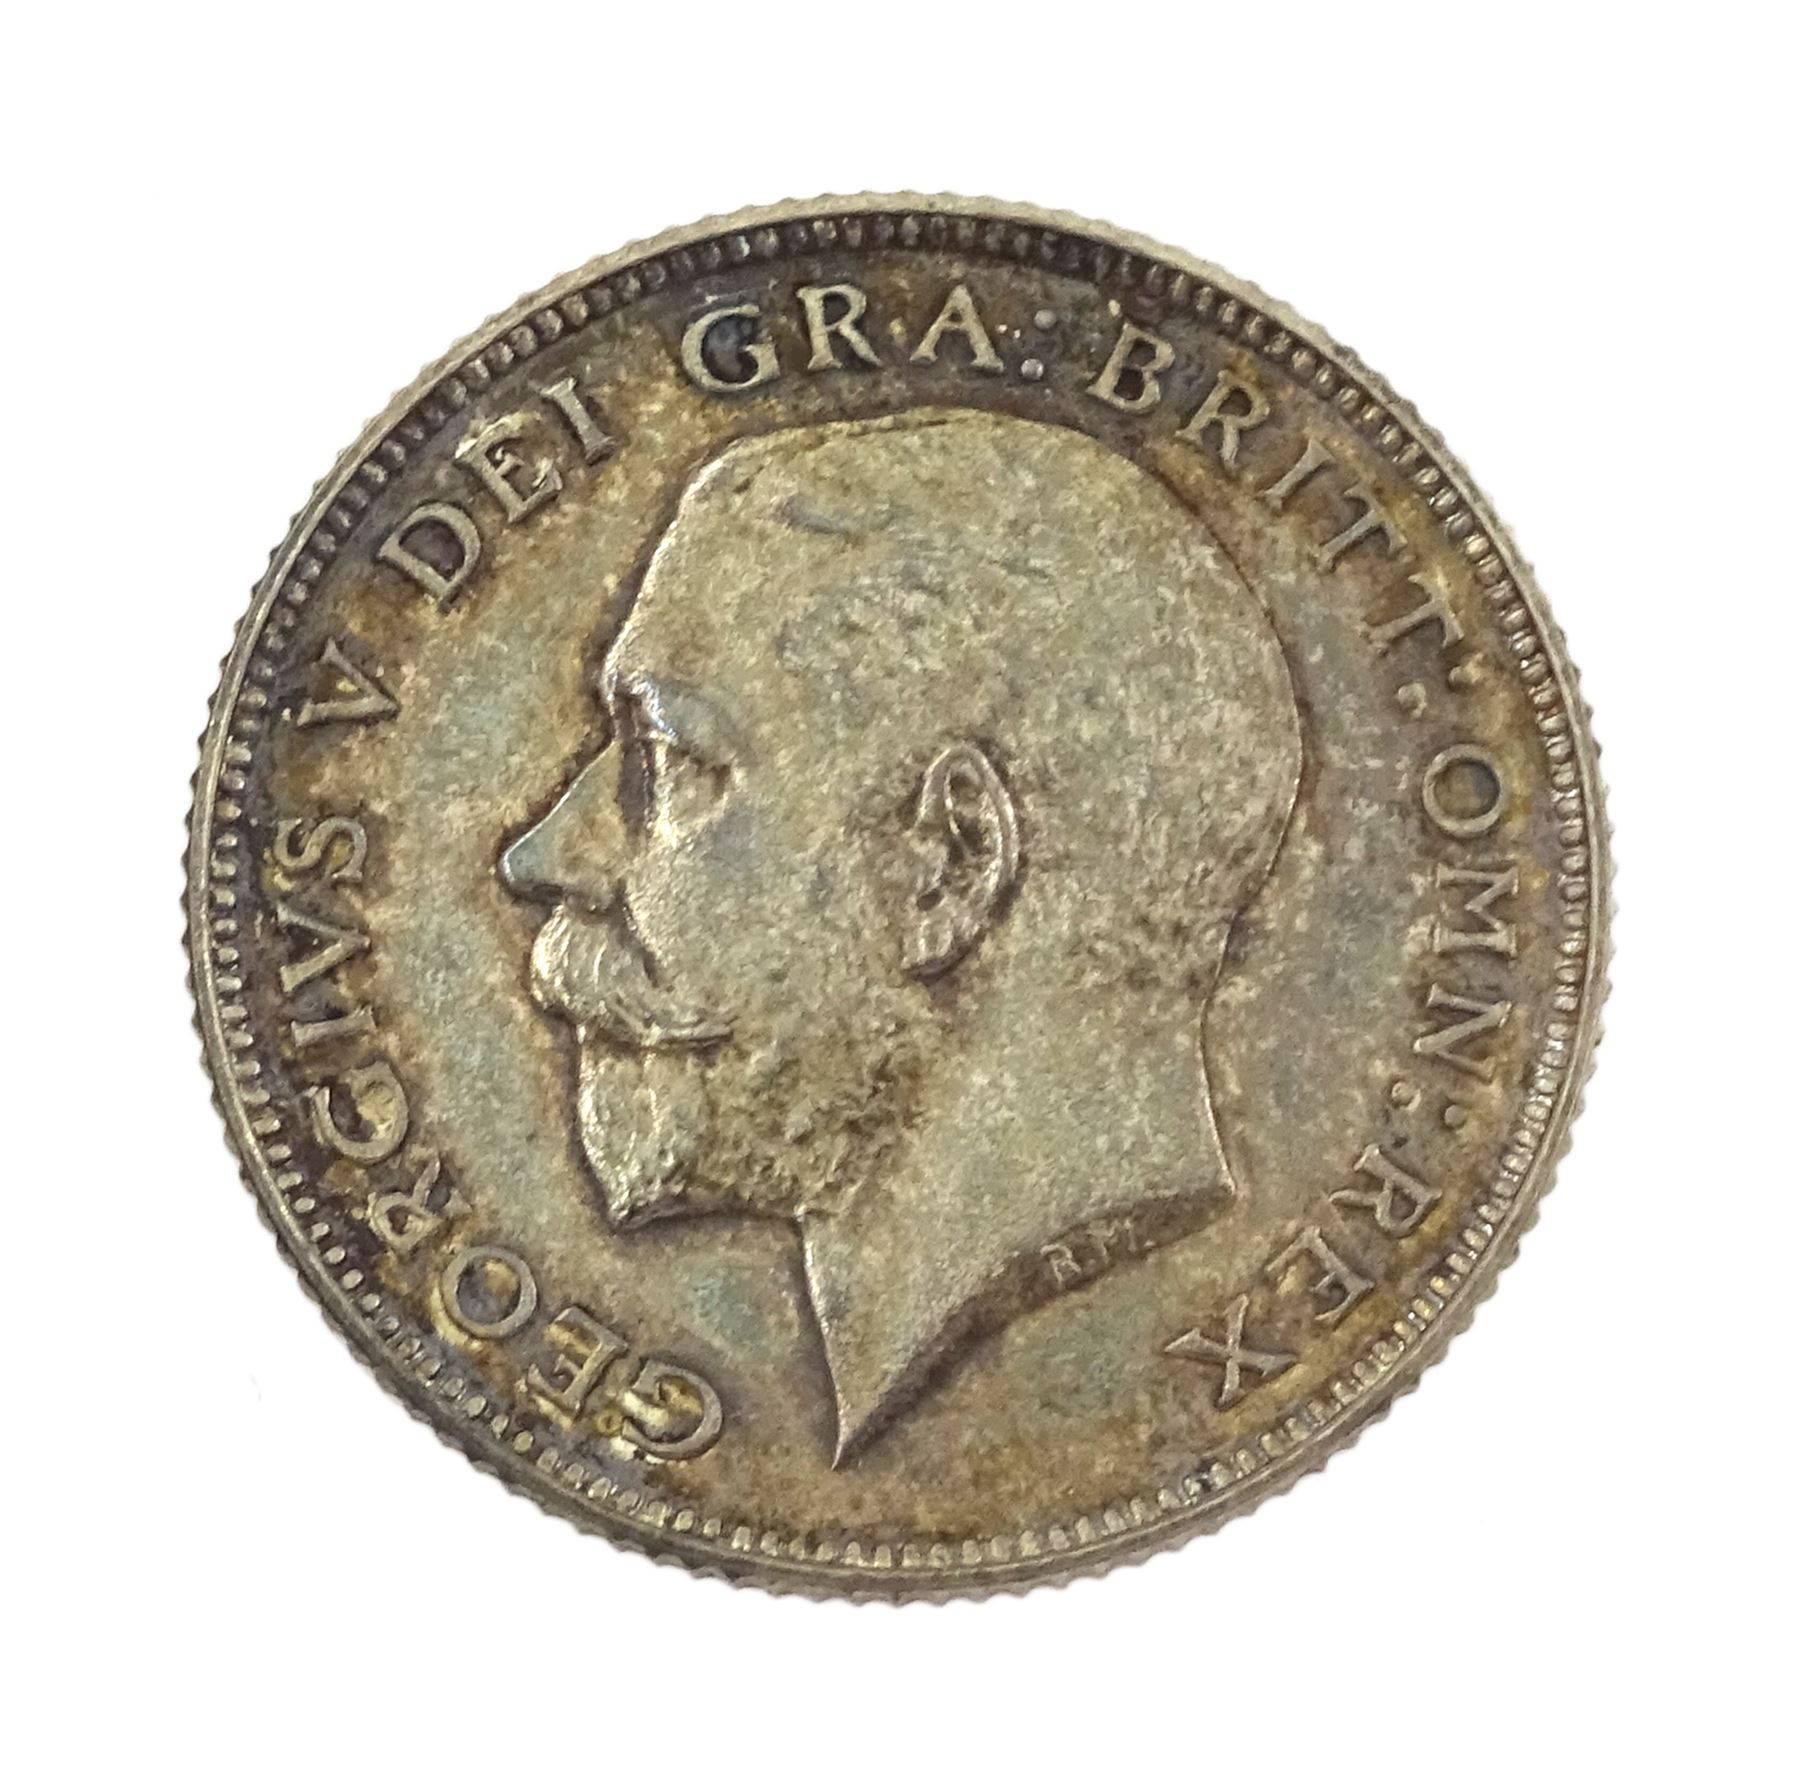 King George V 1911 proof short coin set - Image 16 of 24